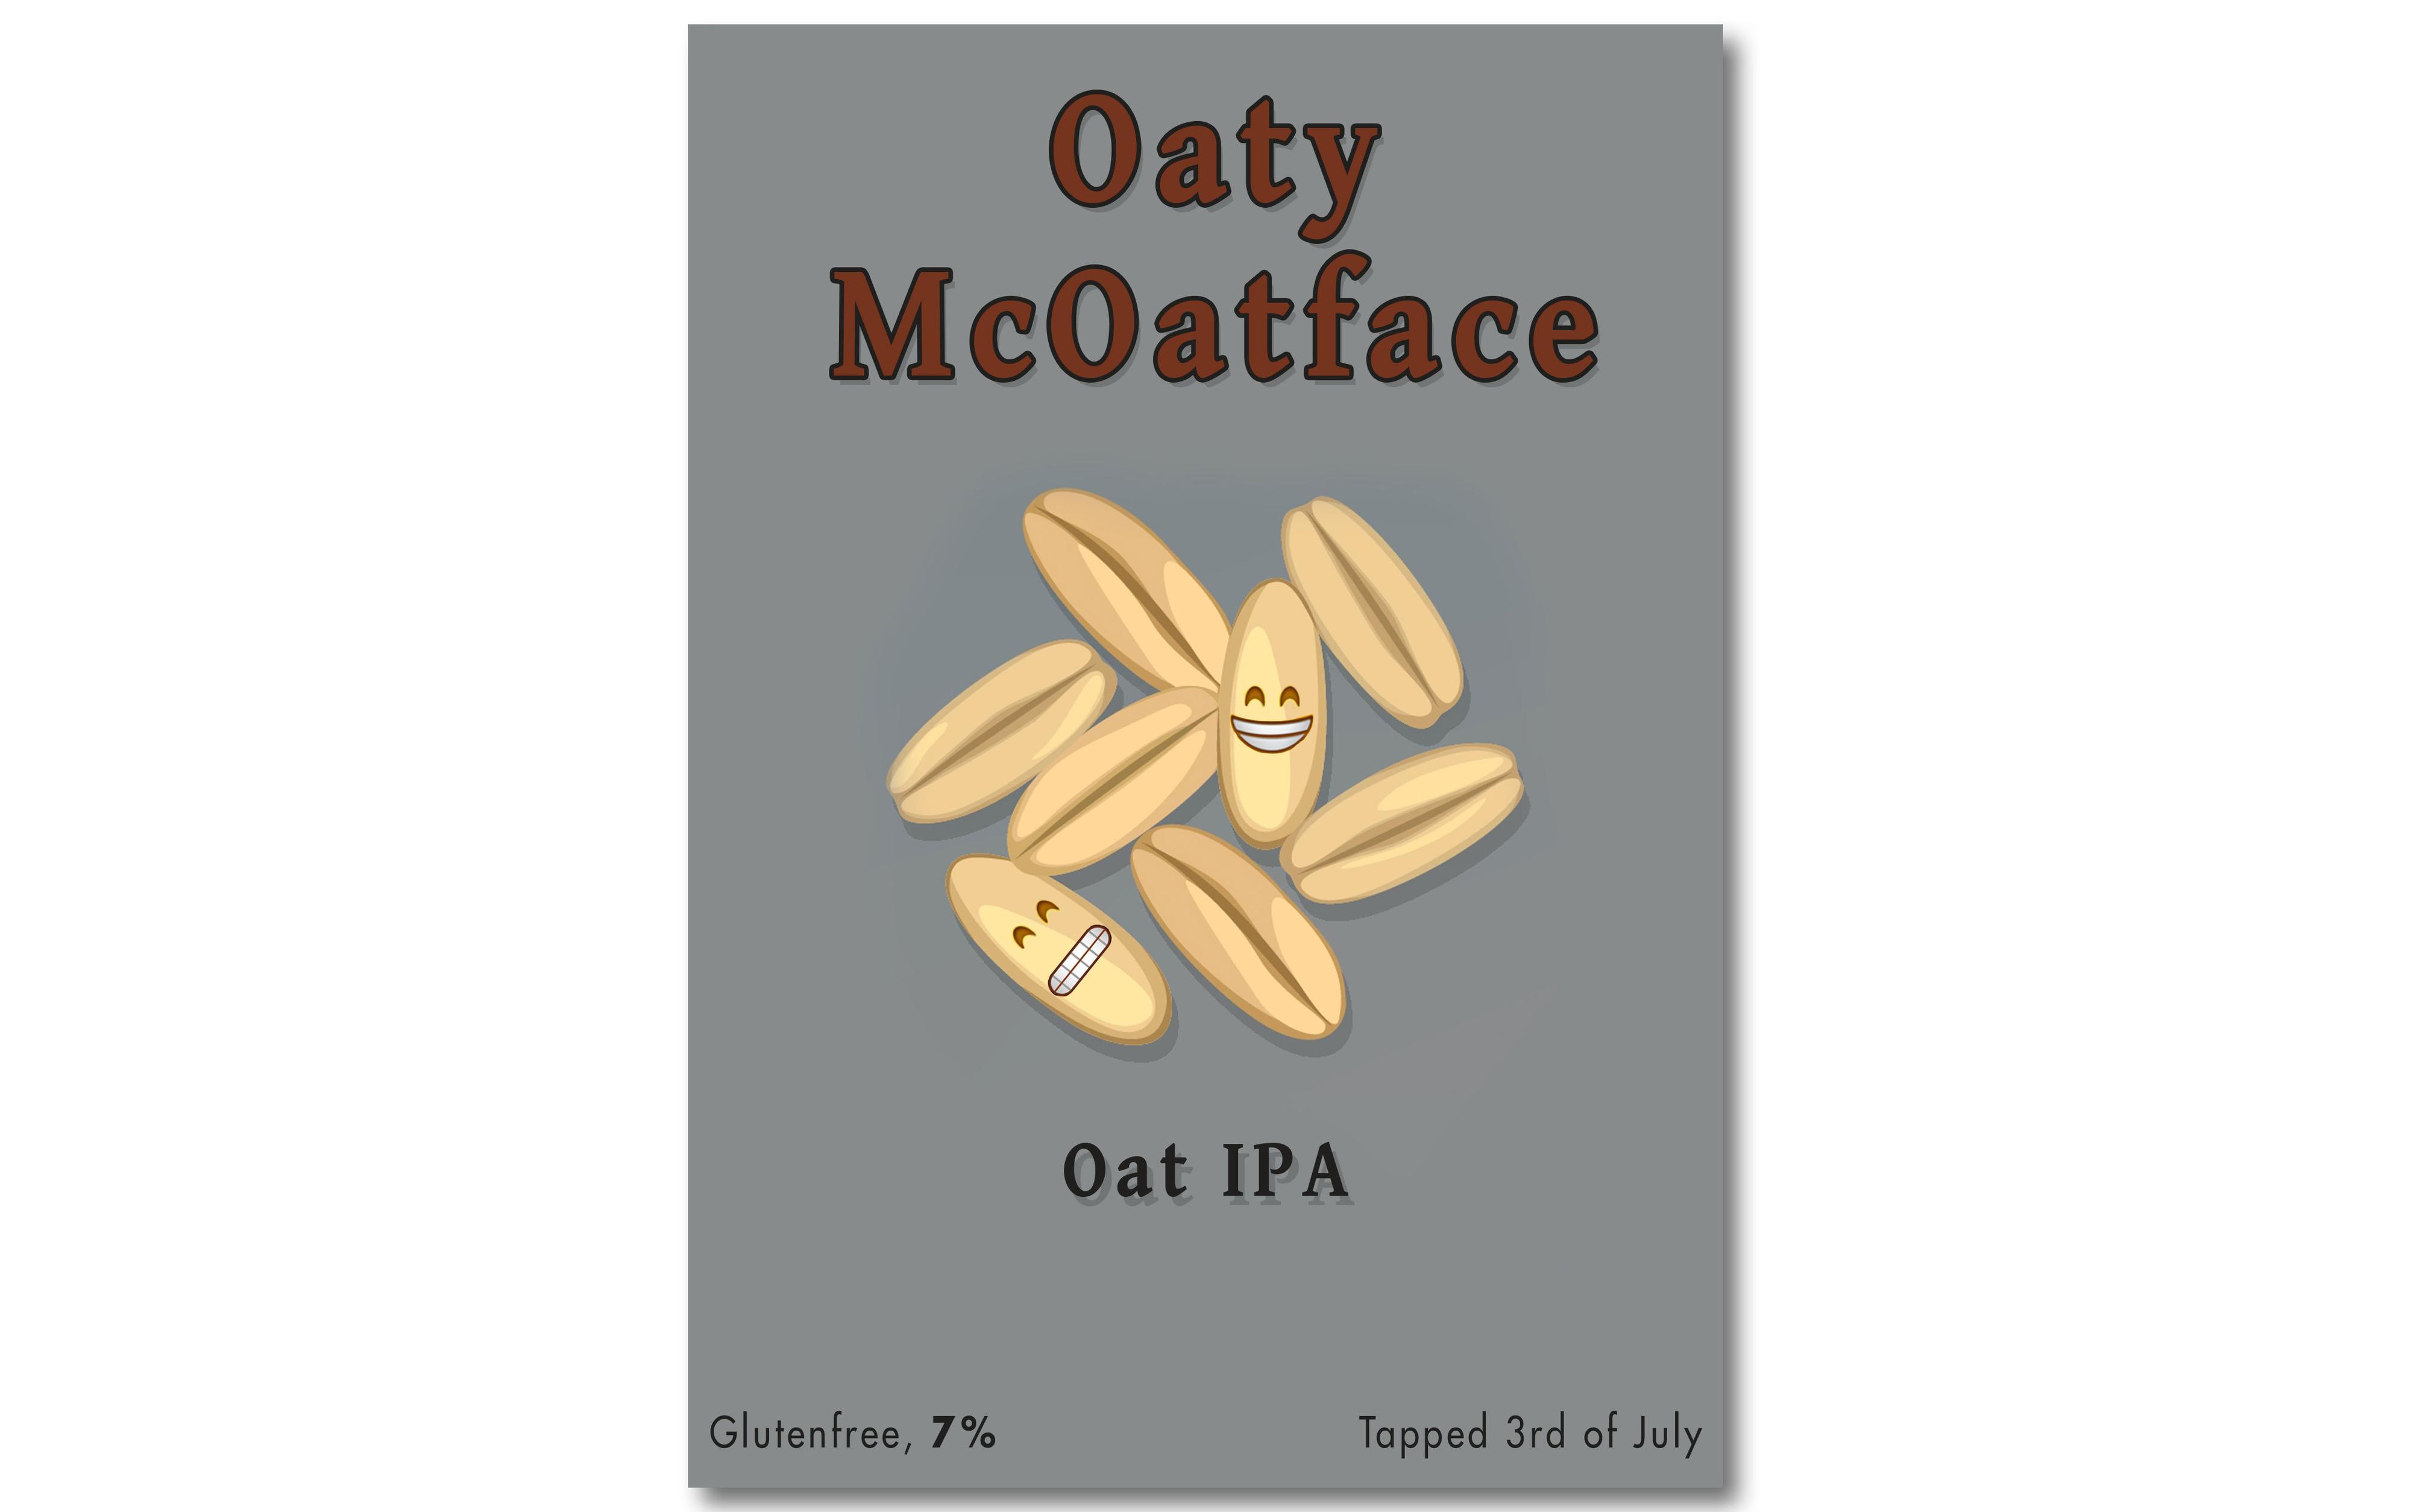 Ølen ble til slutt hetende Oaty McOatface.